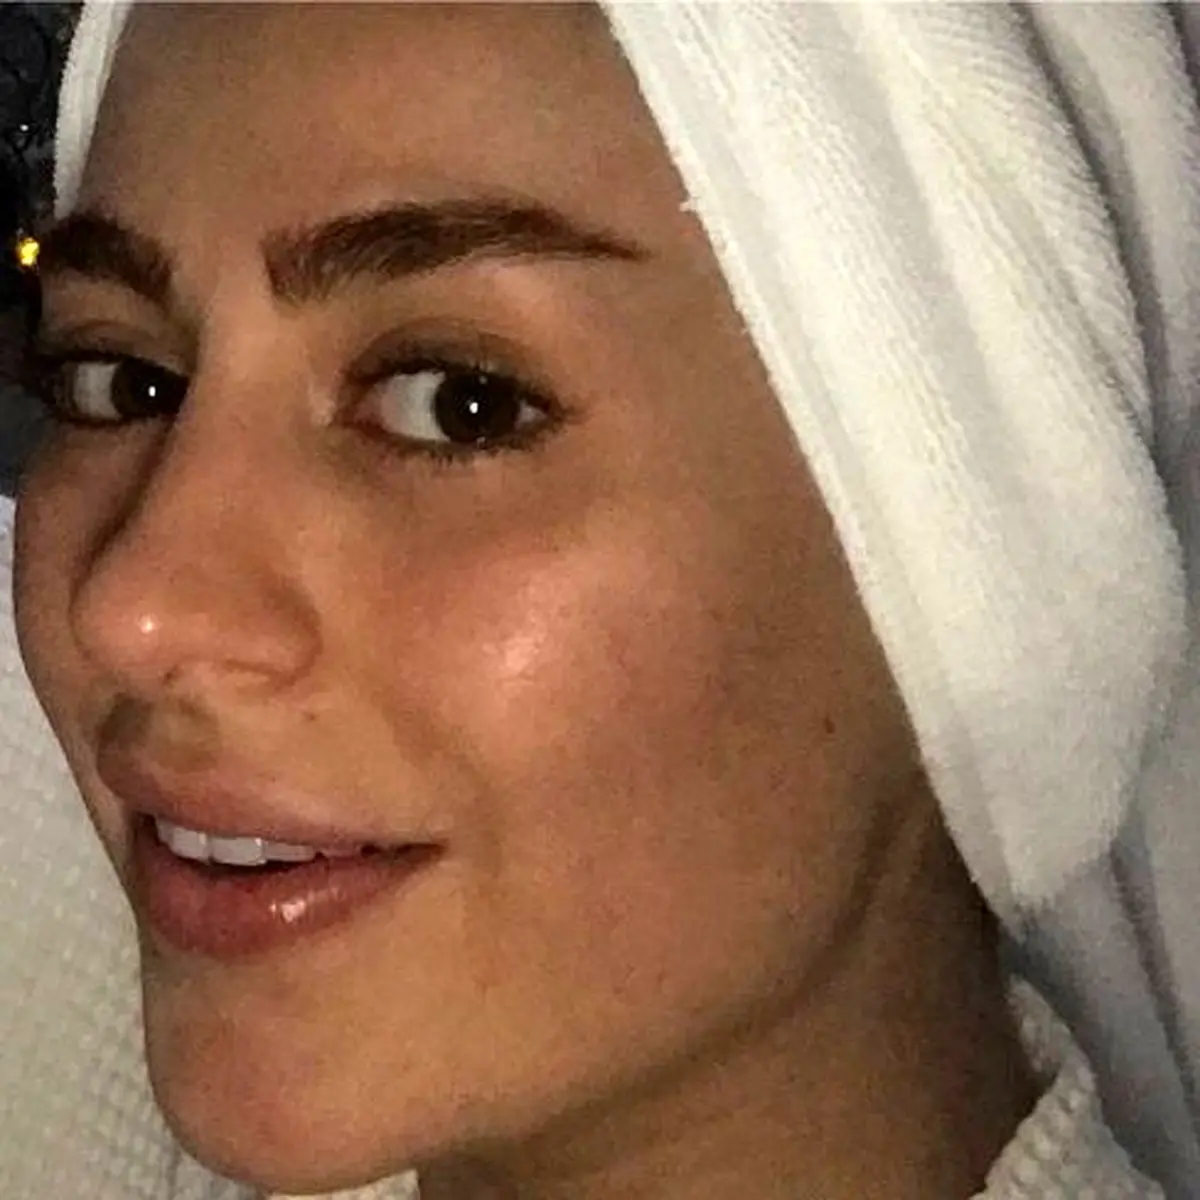 سمانه پاکدل به درخواست طرفدارانش عکس بدون آرایش خود را منتشر کرد